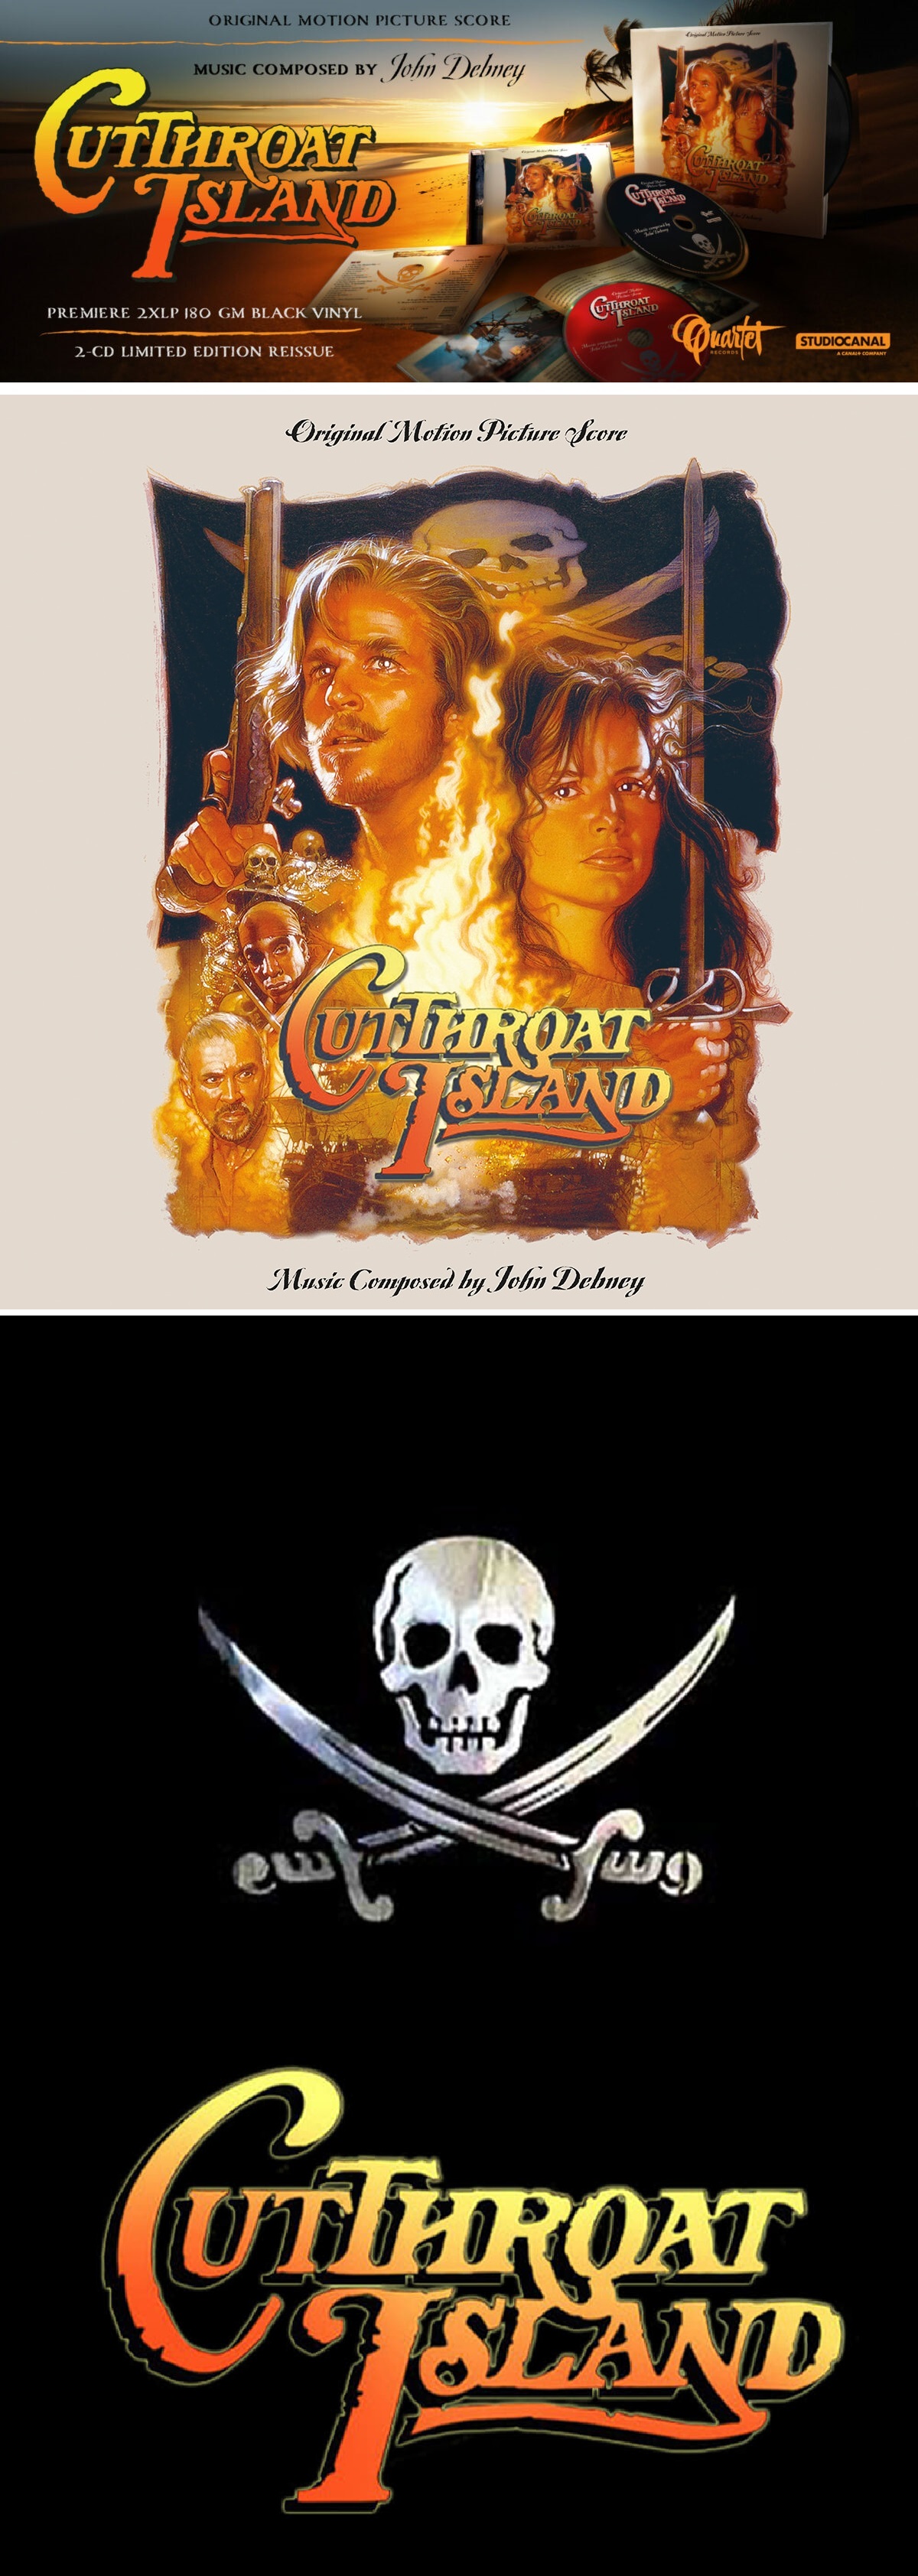 L'ile aux pirates (Cutthroat Island) (2-CD)